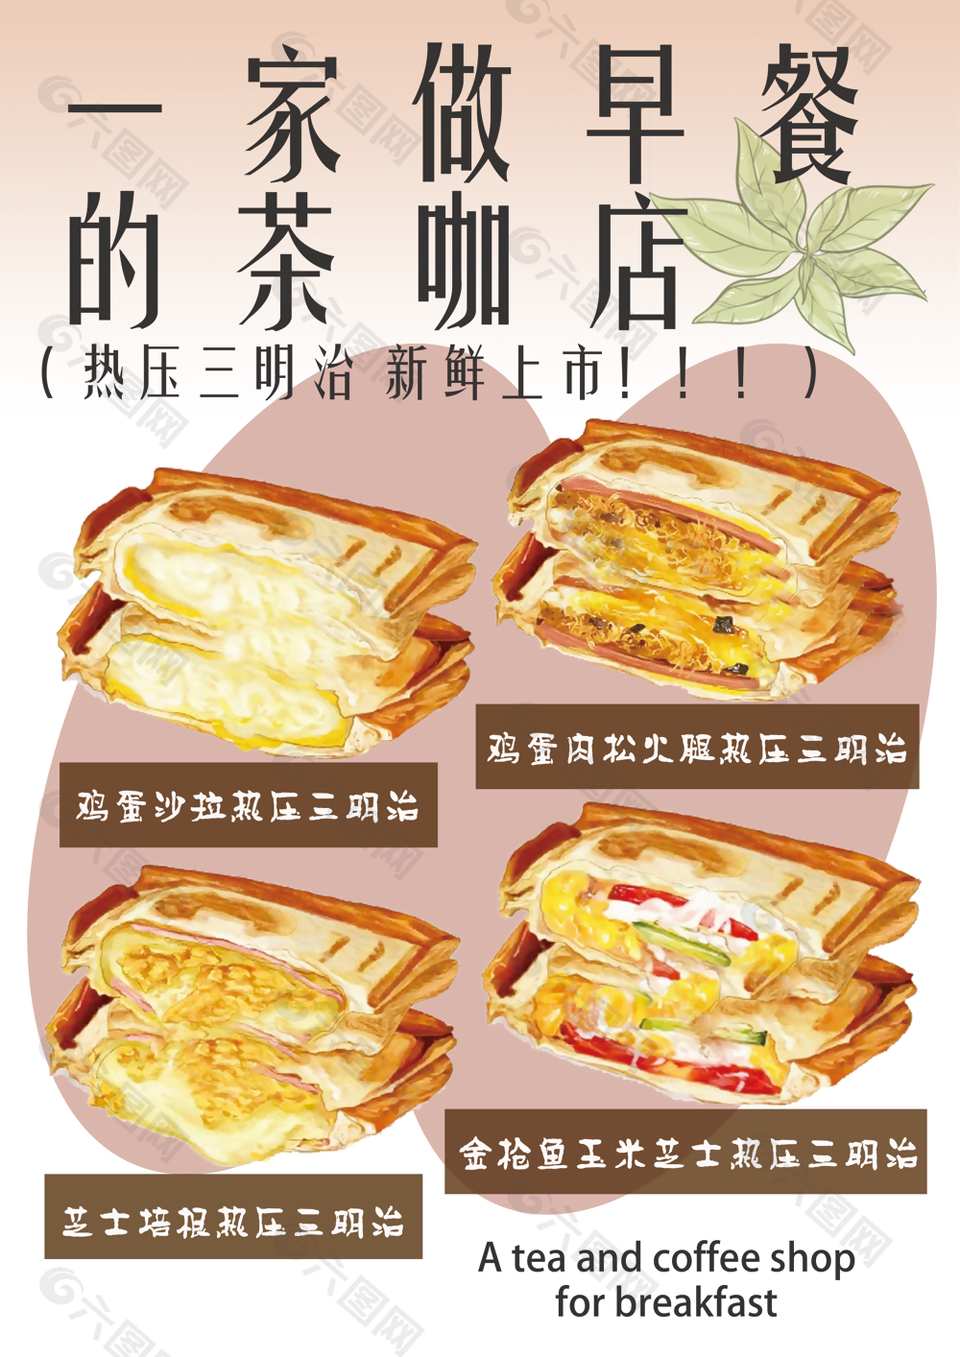 茶咖店热压三明治活动宣传海报图设计